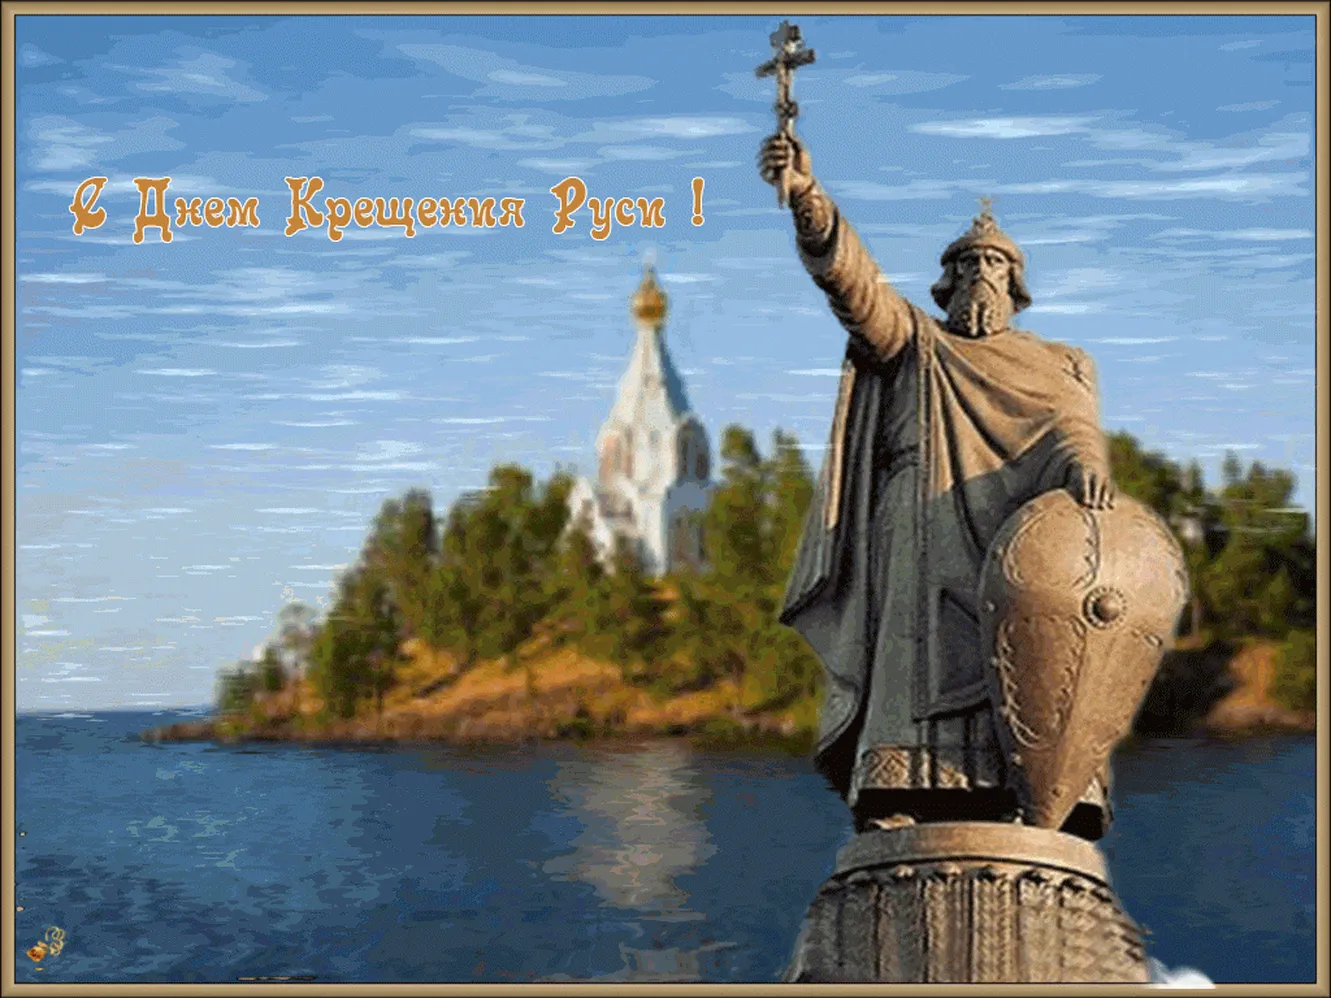 Тематическая открытка с днем крещения Руси